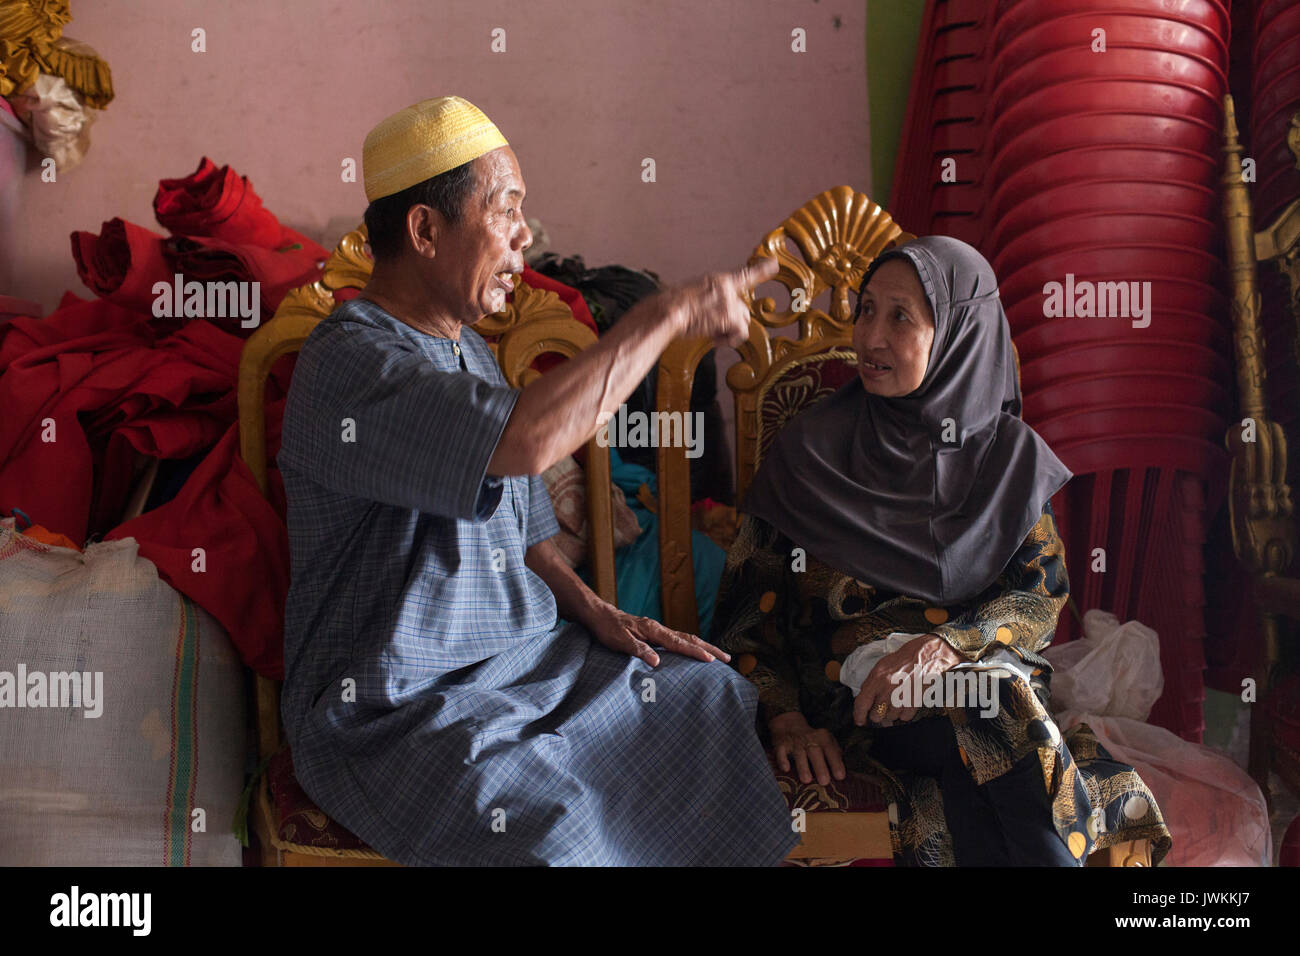 Haji Idha, el jefe de la comunidad transgénero en Sulawesi del Sur, es una mujer de negocios exitosa. Como la mayoría de los aproximadamente 10000 calabai viviendo en Sulawesi del Sur, ella tiene una empresa organizadora de bodas, continuando la tradición según la cual el Símbolo buginés todas las bodas fueron organizados por calabai. Ella comenzó su boda organizar negocios en 1978 y actualmente es uno de los más famosos de la zona, con órdenes procedentes de toda Indonesia, desde familias de Bugis que se han trasladado a lugares distantes. Foto de stock